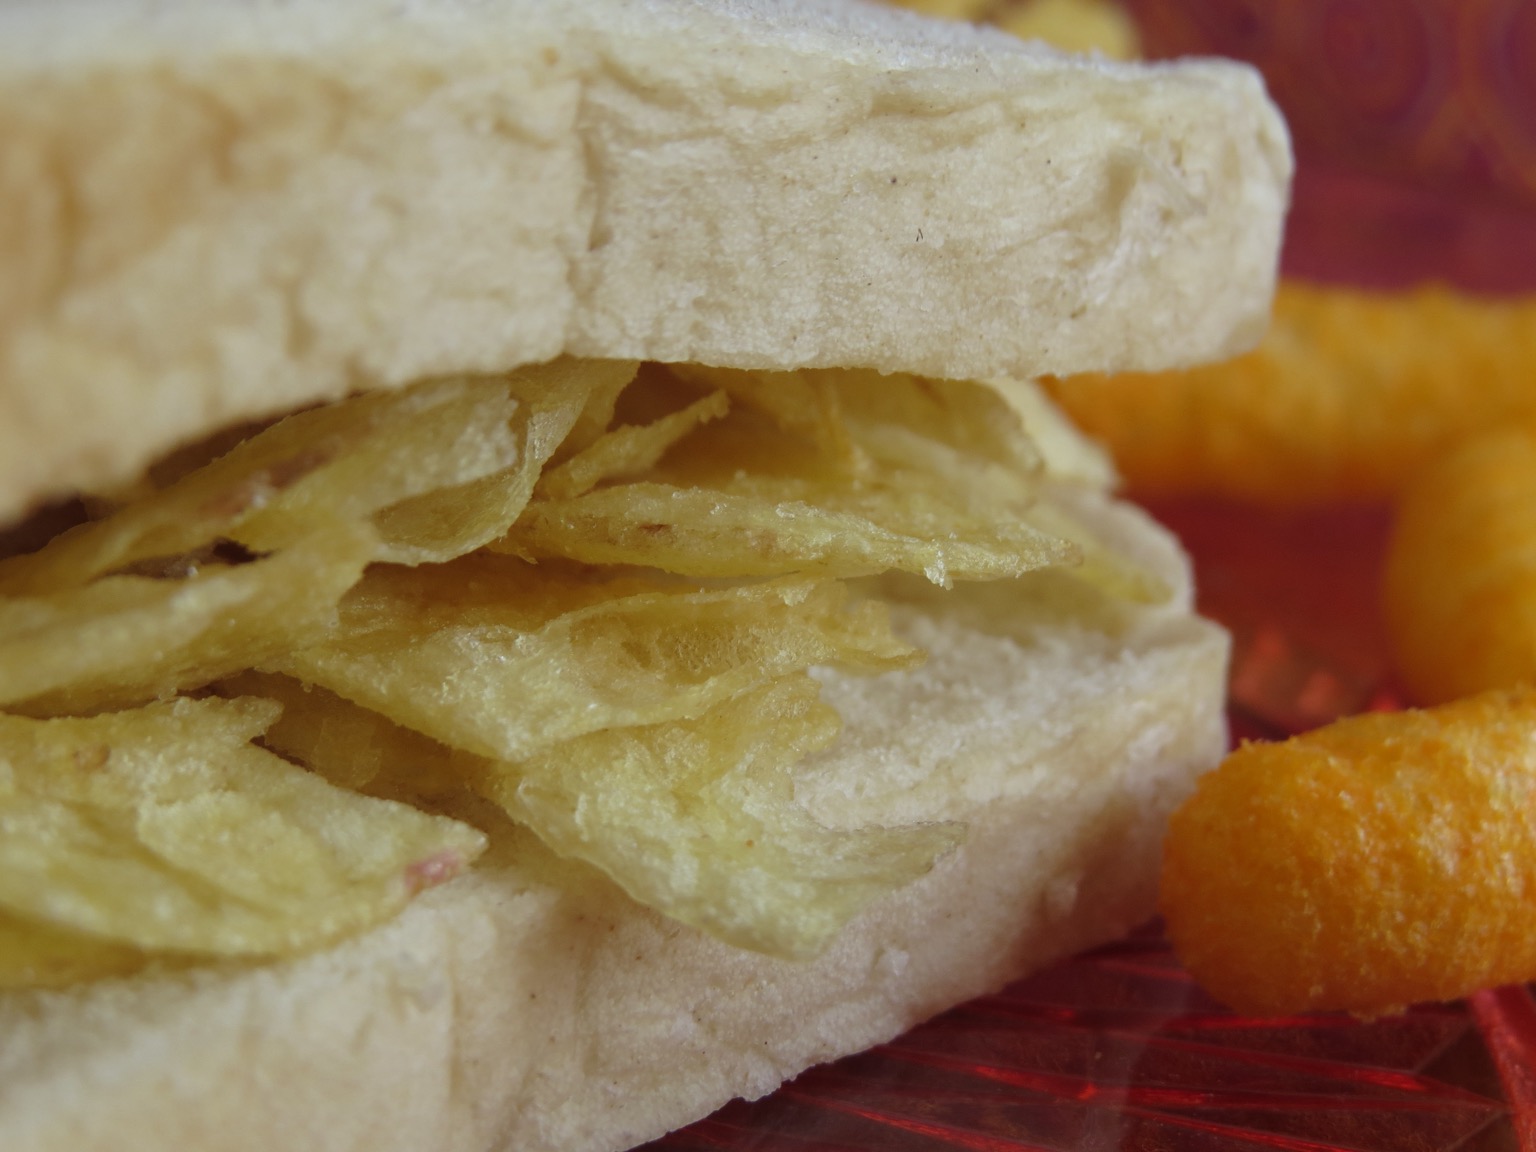 Extreme close up of potato crisp sandwich and Wotsits